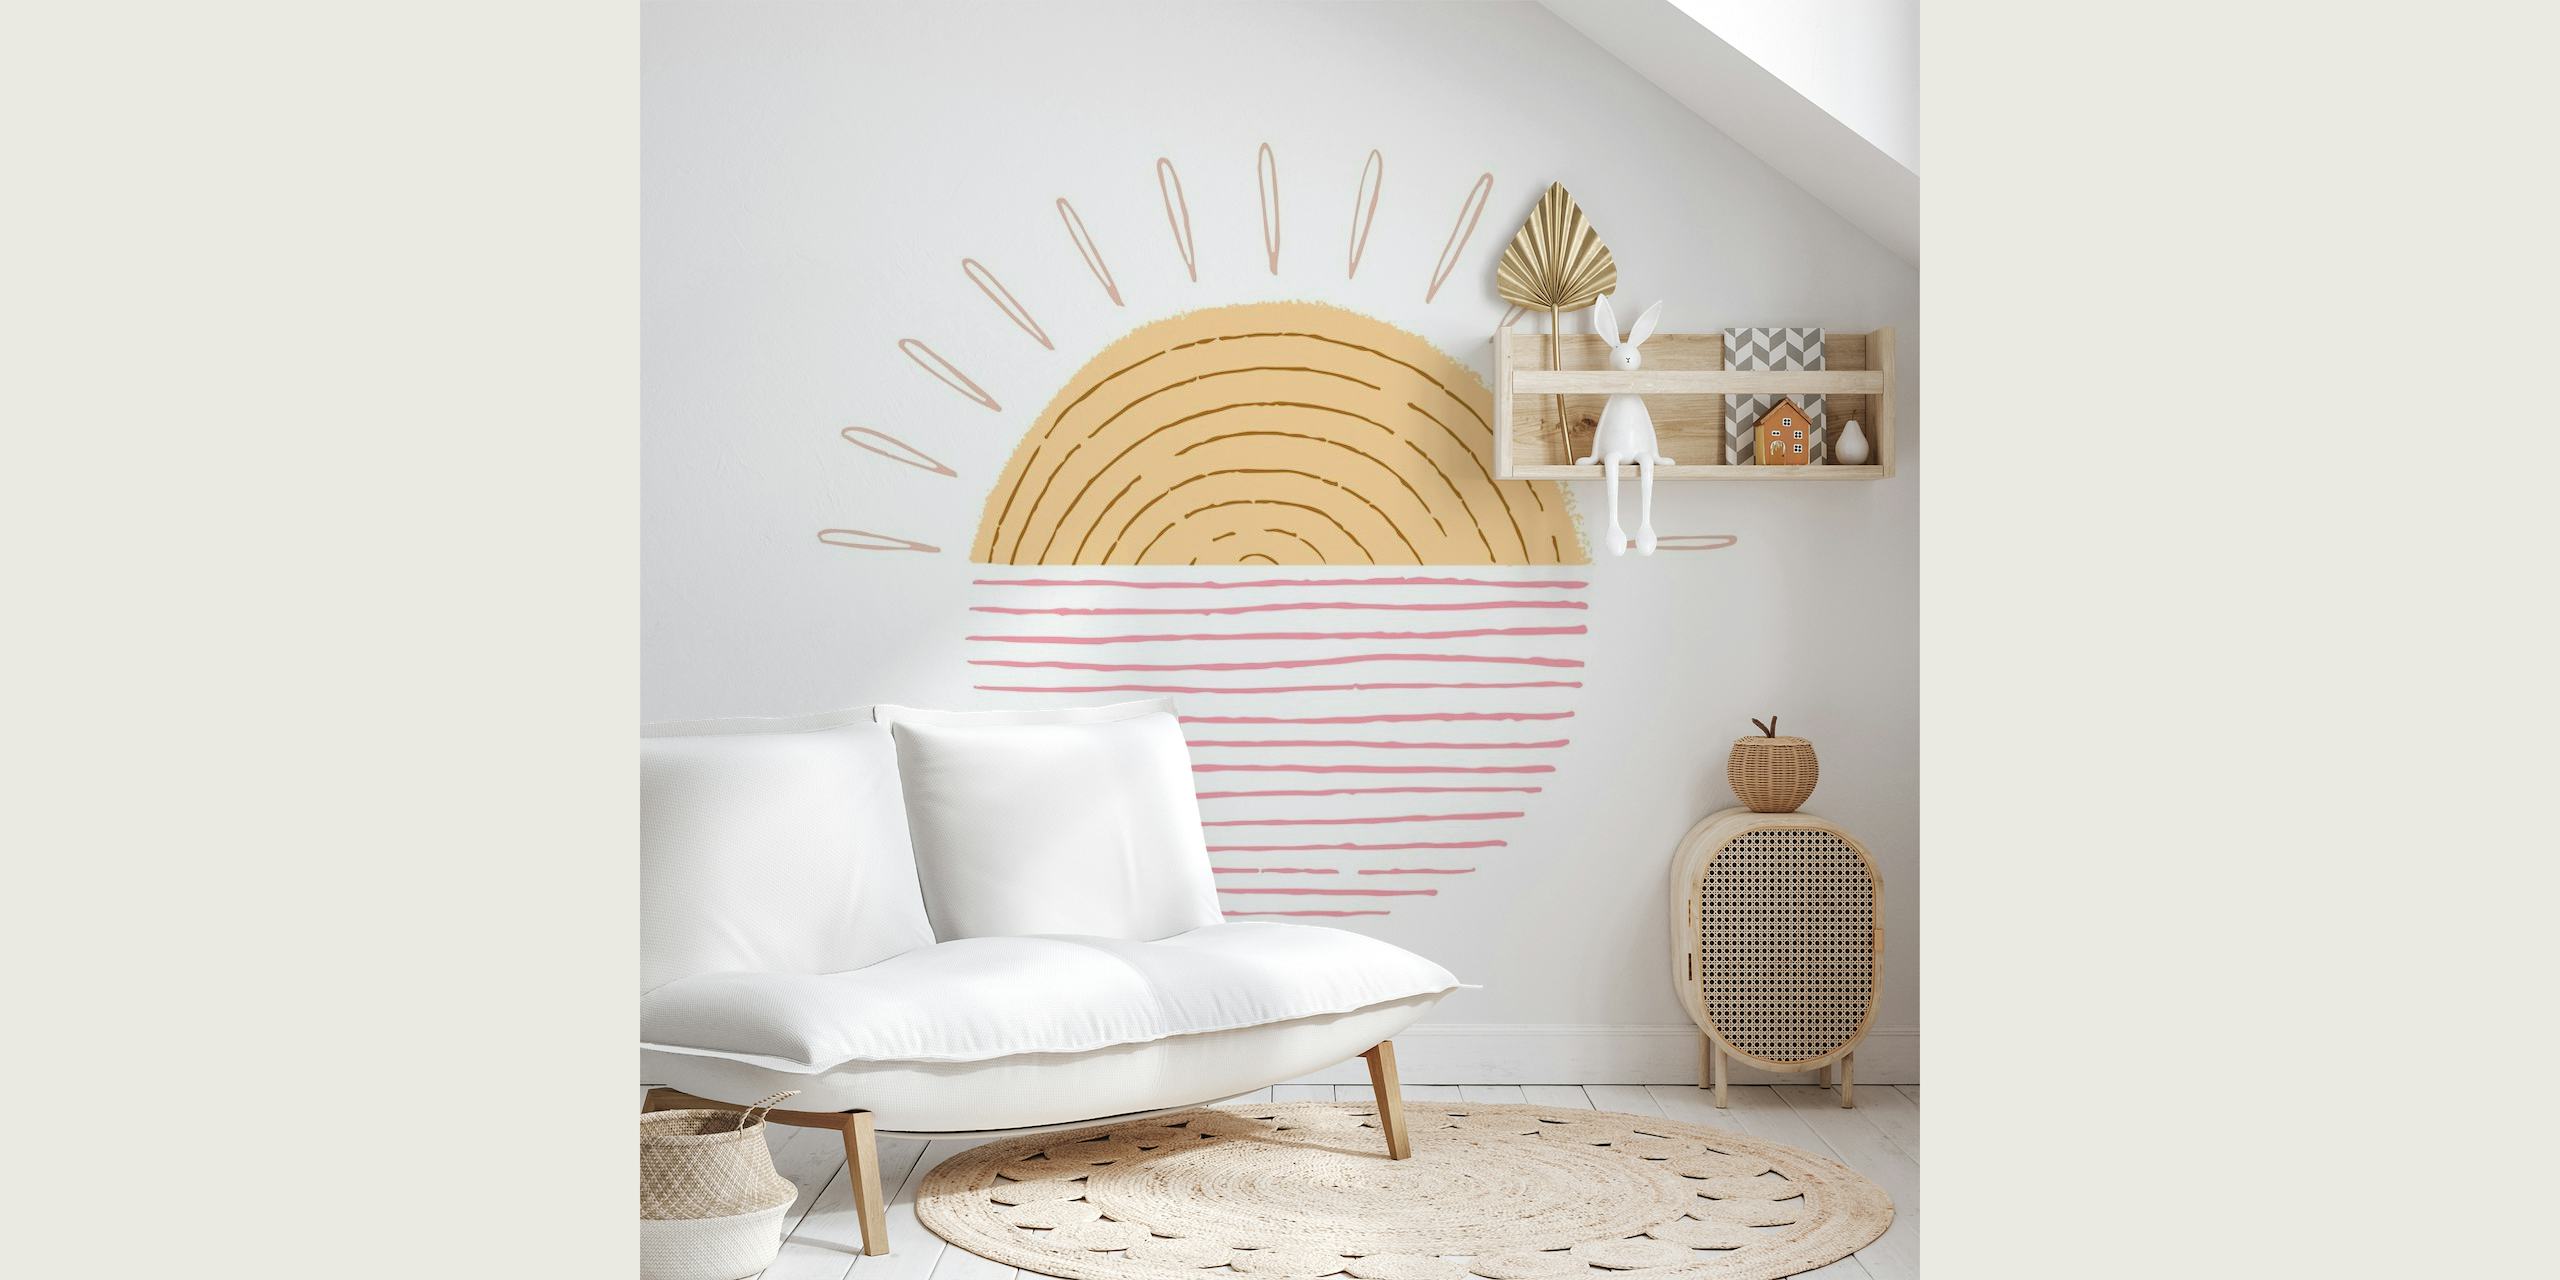 Mural ilustrativo de Dulce Amanecer con tonos cálidos y diseño minimalista